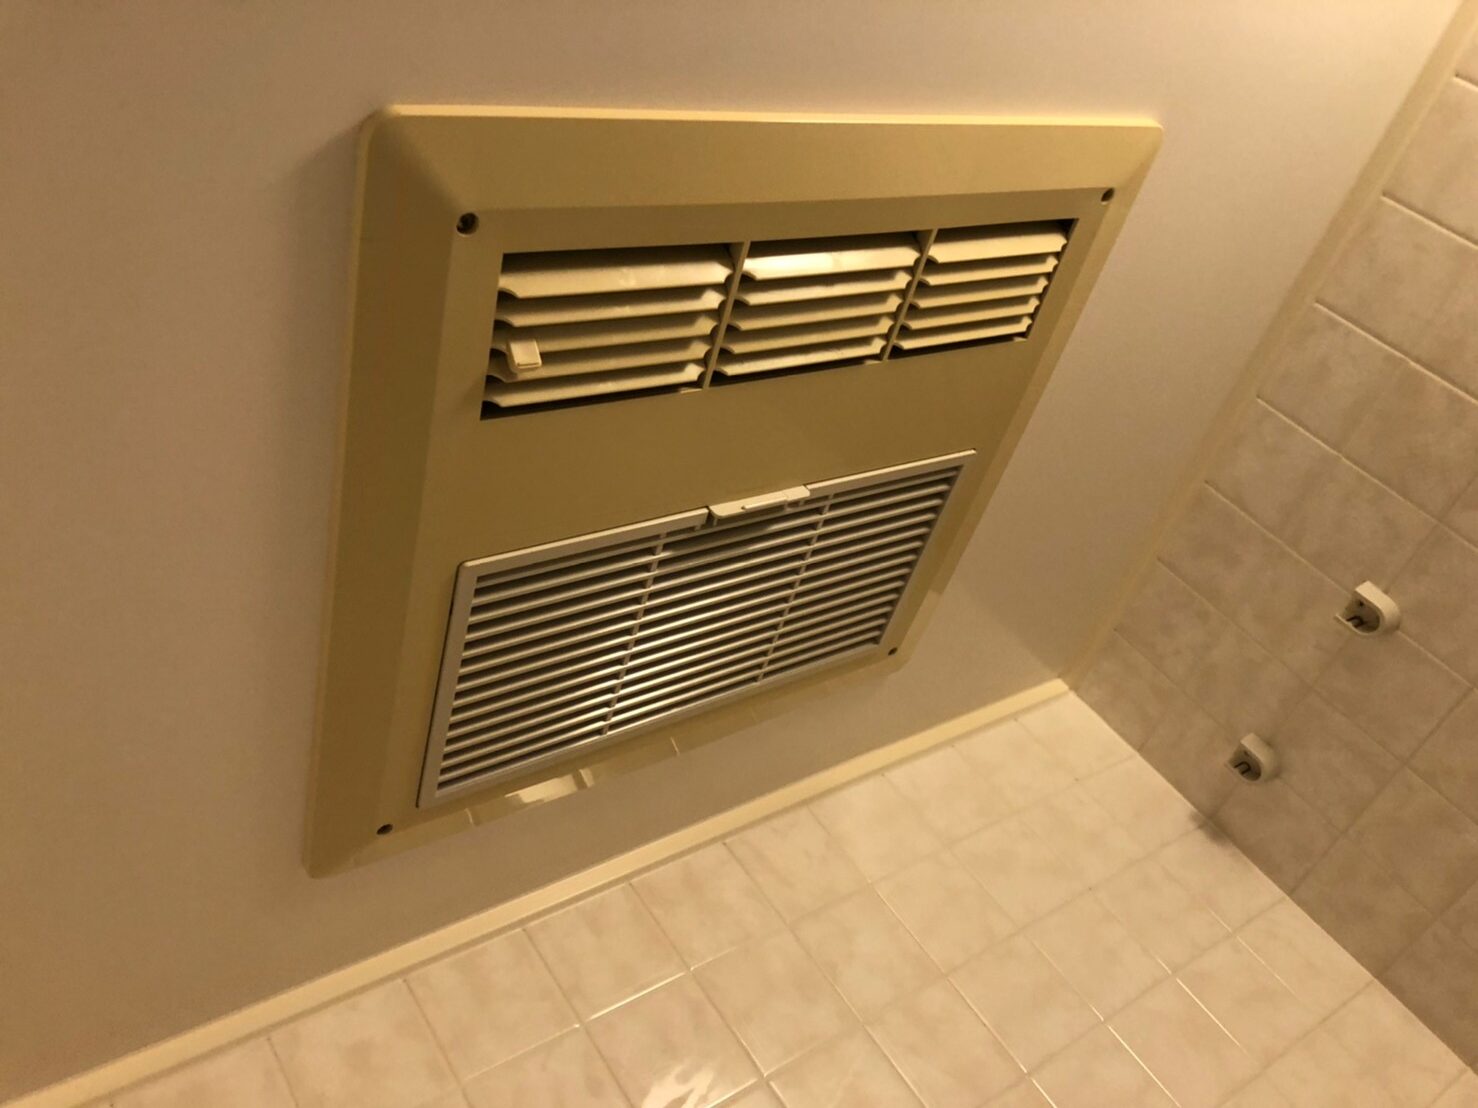 三菱電機 天井埋込み型浴室換気暖房乾燥機『バスカラット24』 V-141BZ5 